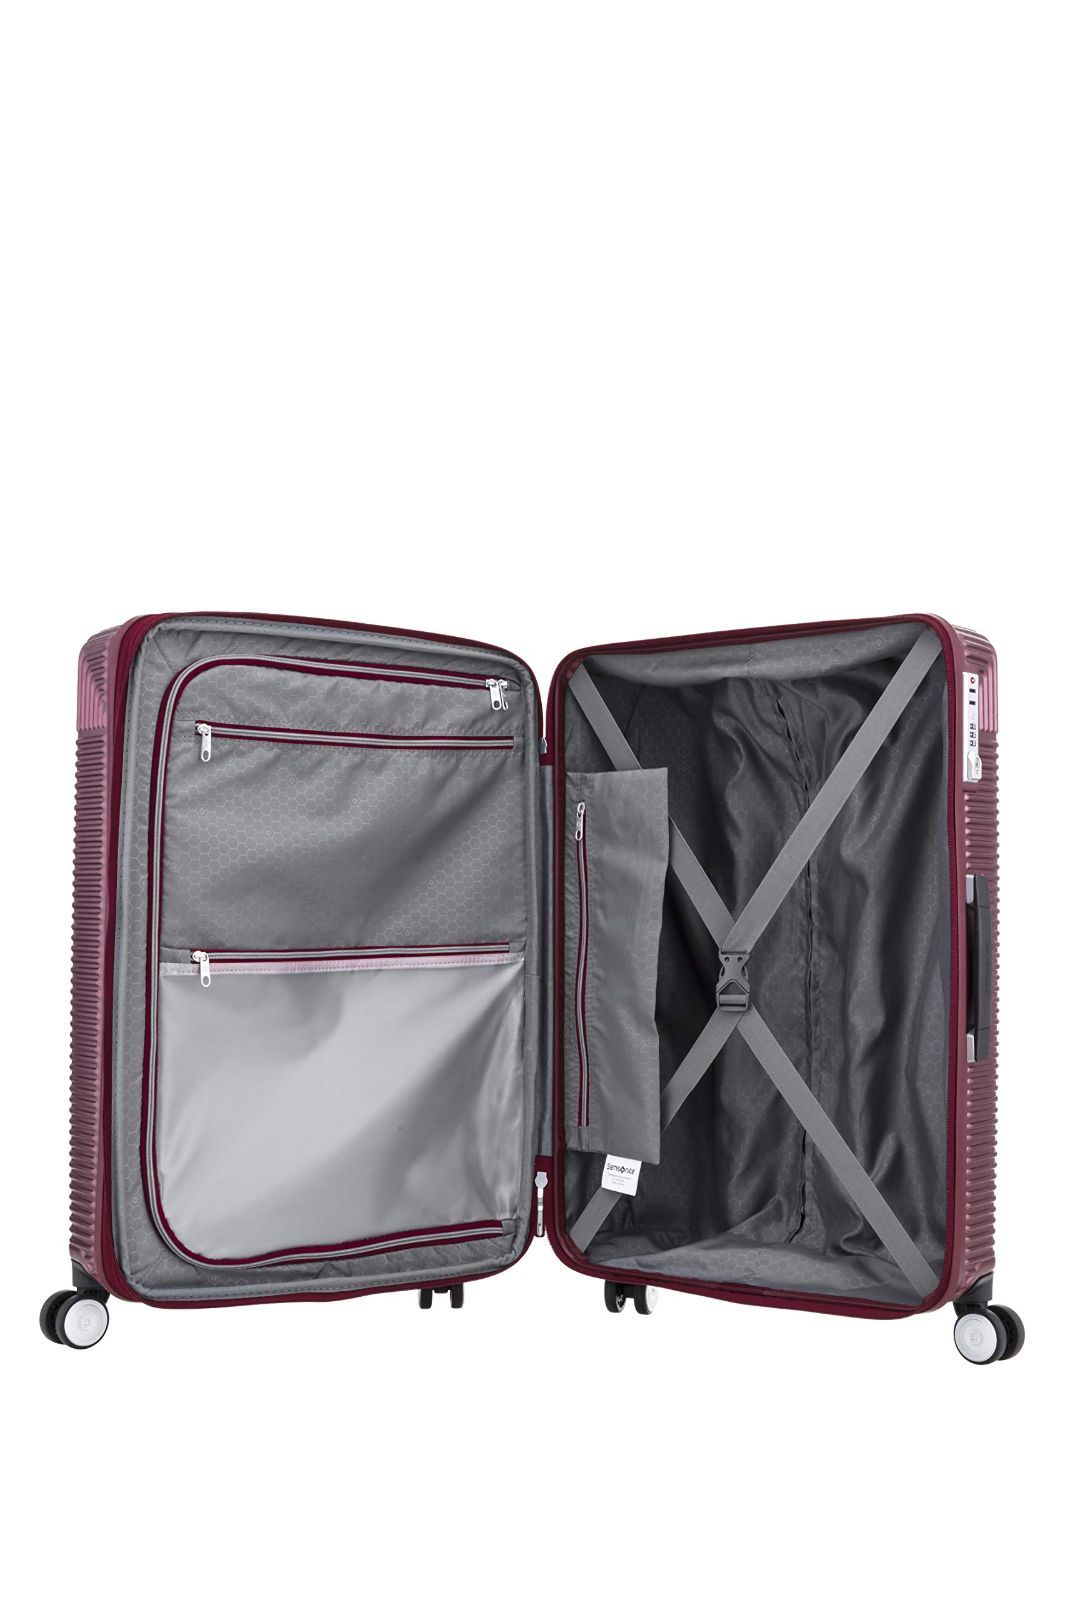 サムソナイト] スーツケース キャリーケース レクサ REXA スピナー 55/20 36L 55 cm 3kg エキスパンダブル 機内持ち込み可 -  旅行用品